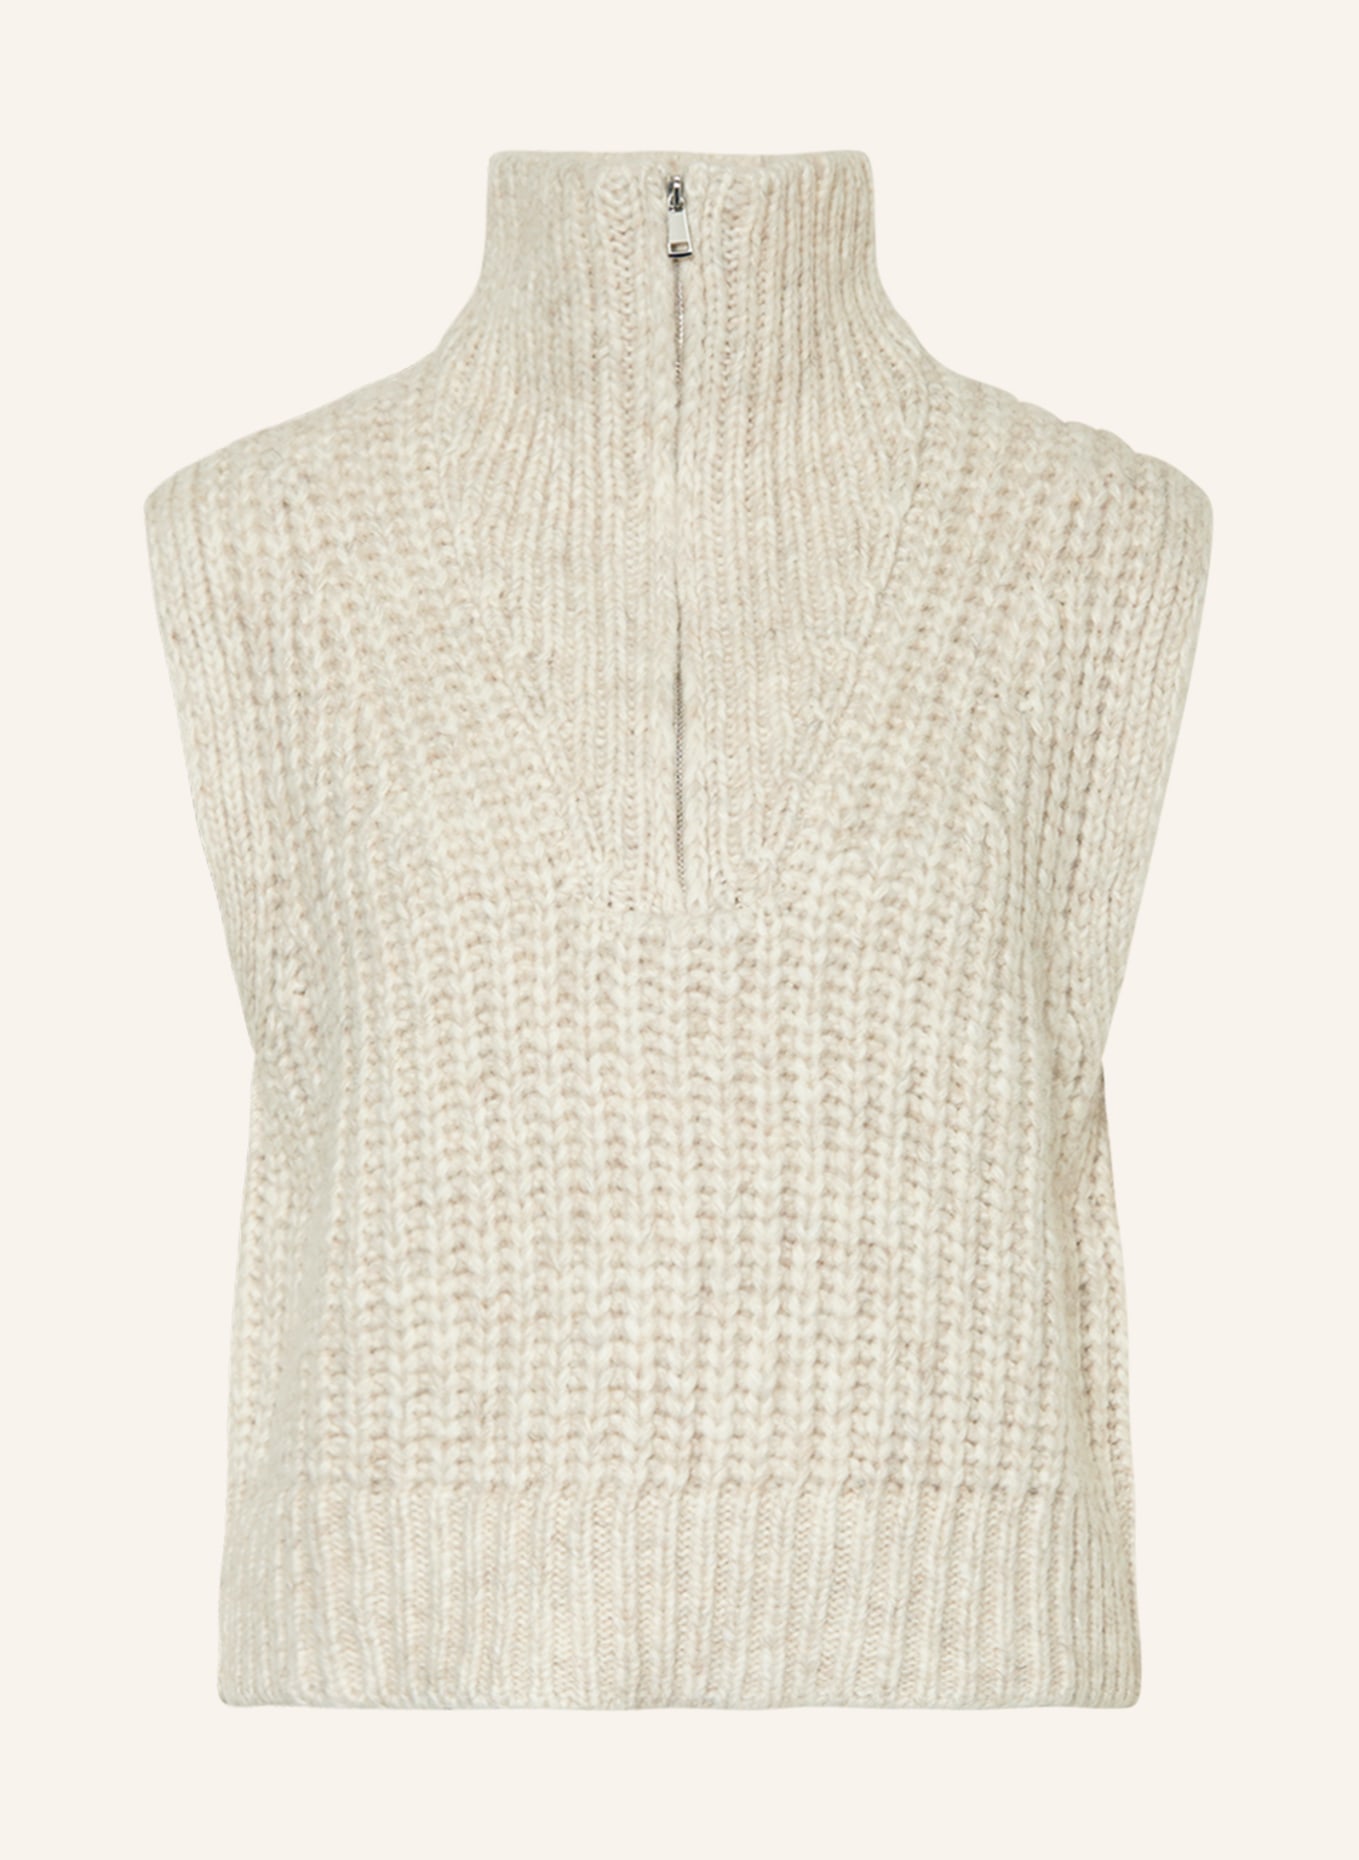 MRS & HUGS Sweater vest, Color: CREAM (Image 1)